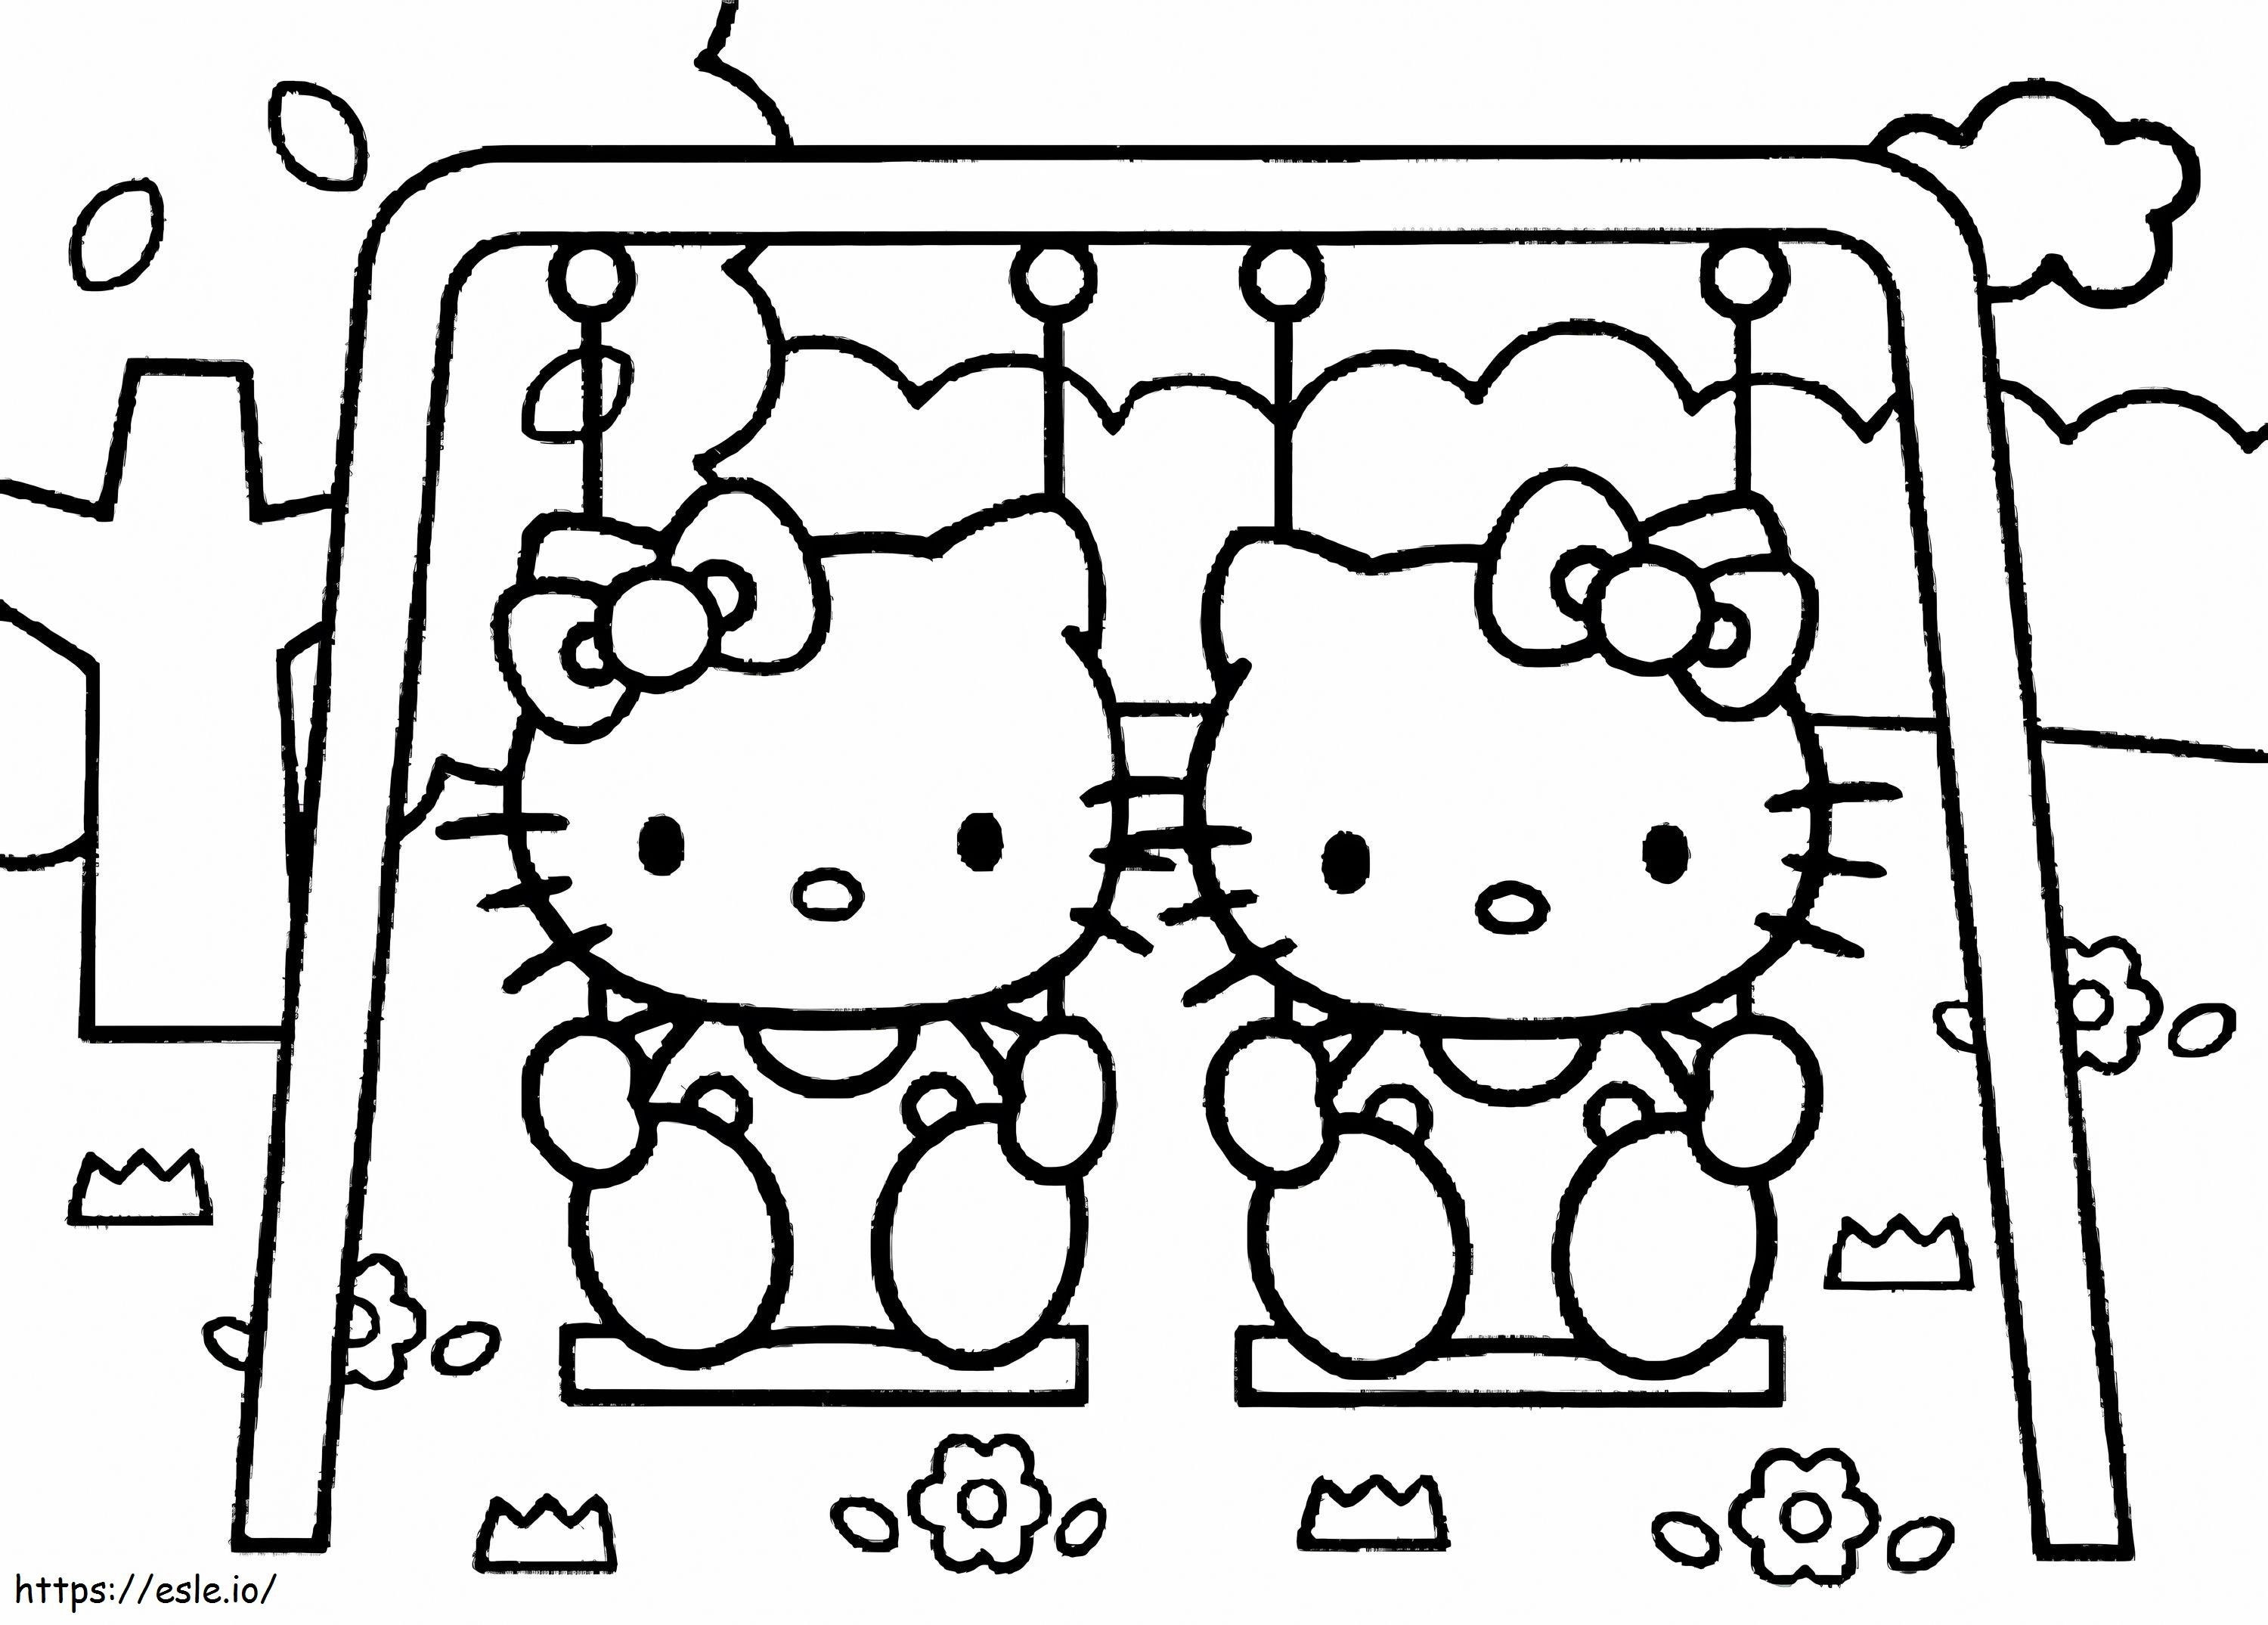 Două mici Hello Kitty jucând roata Ferris de colorat